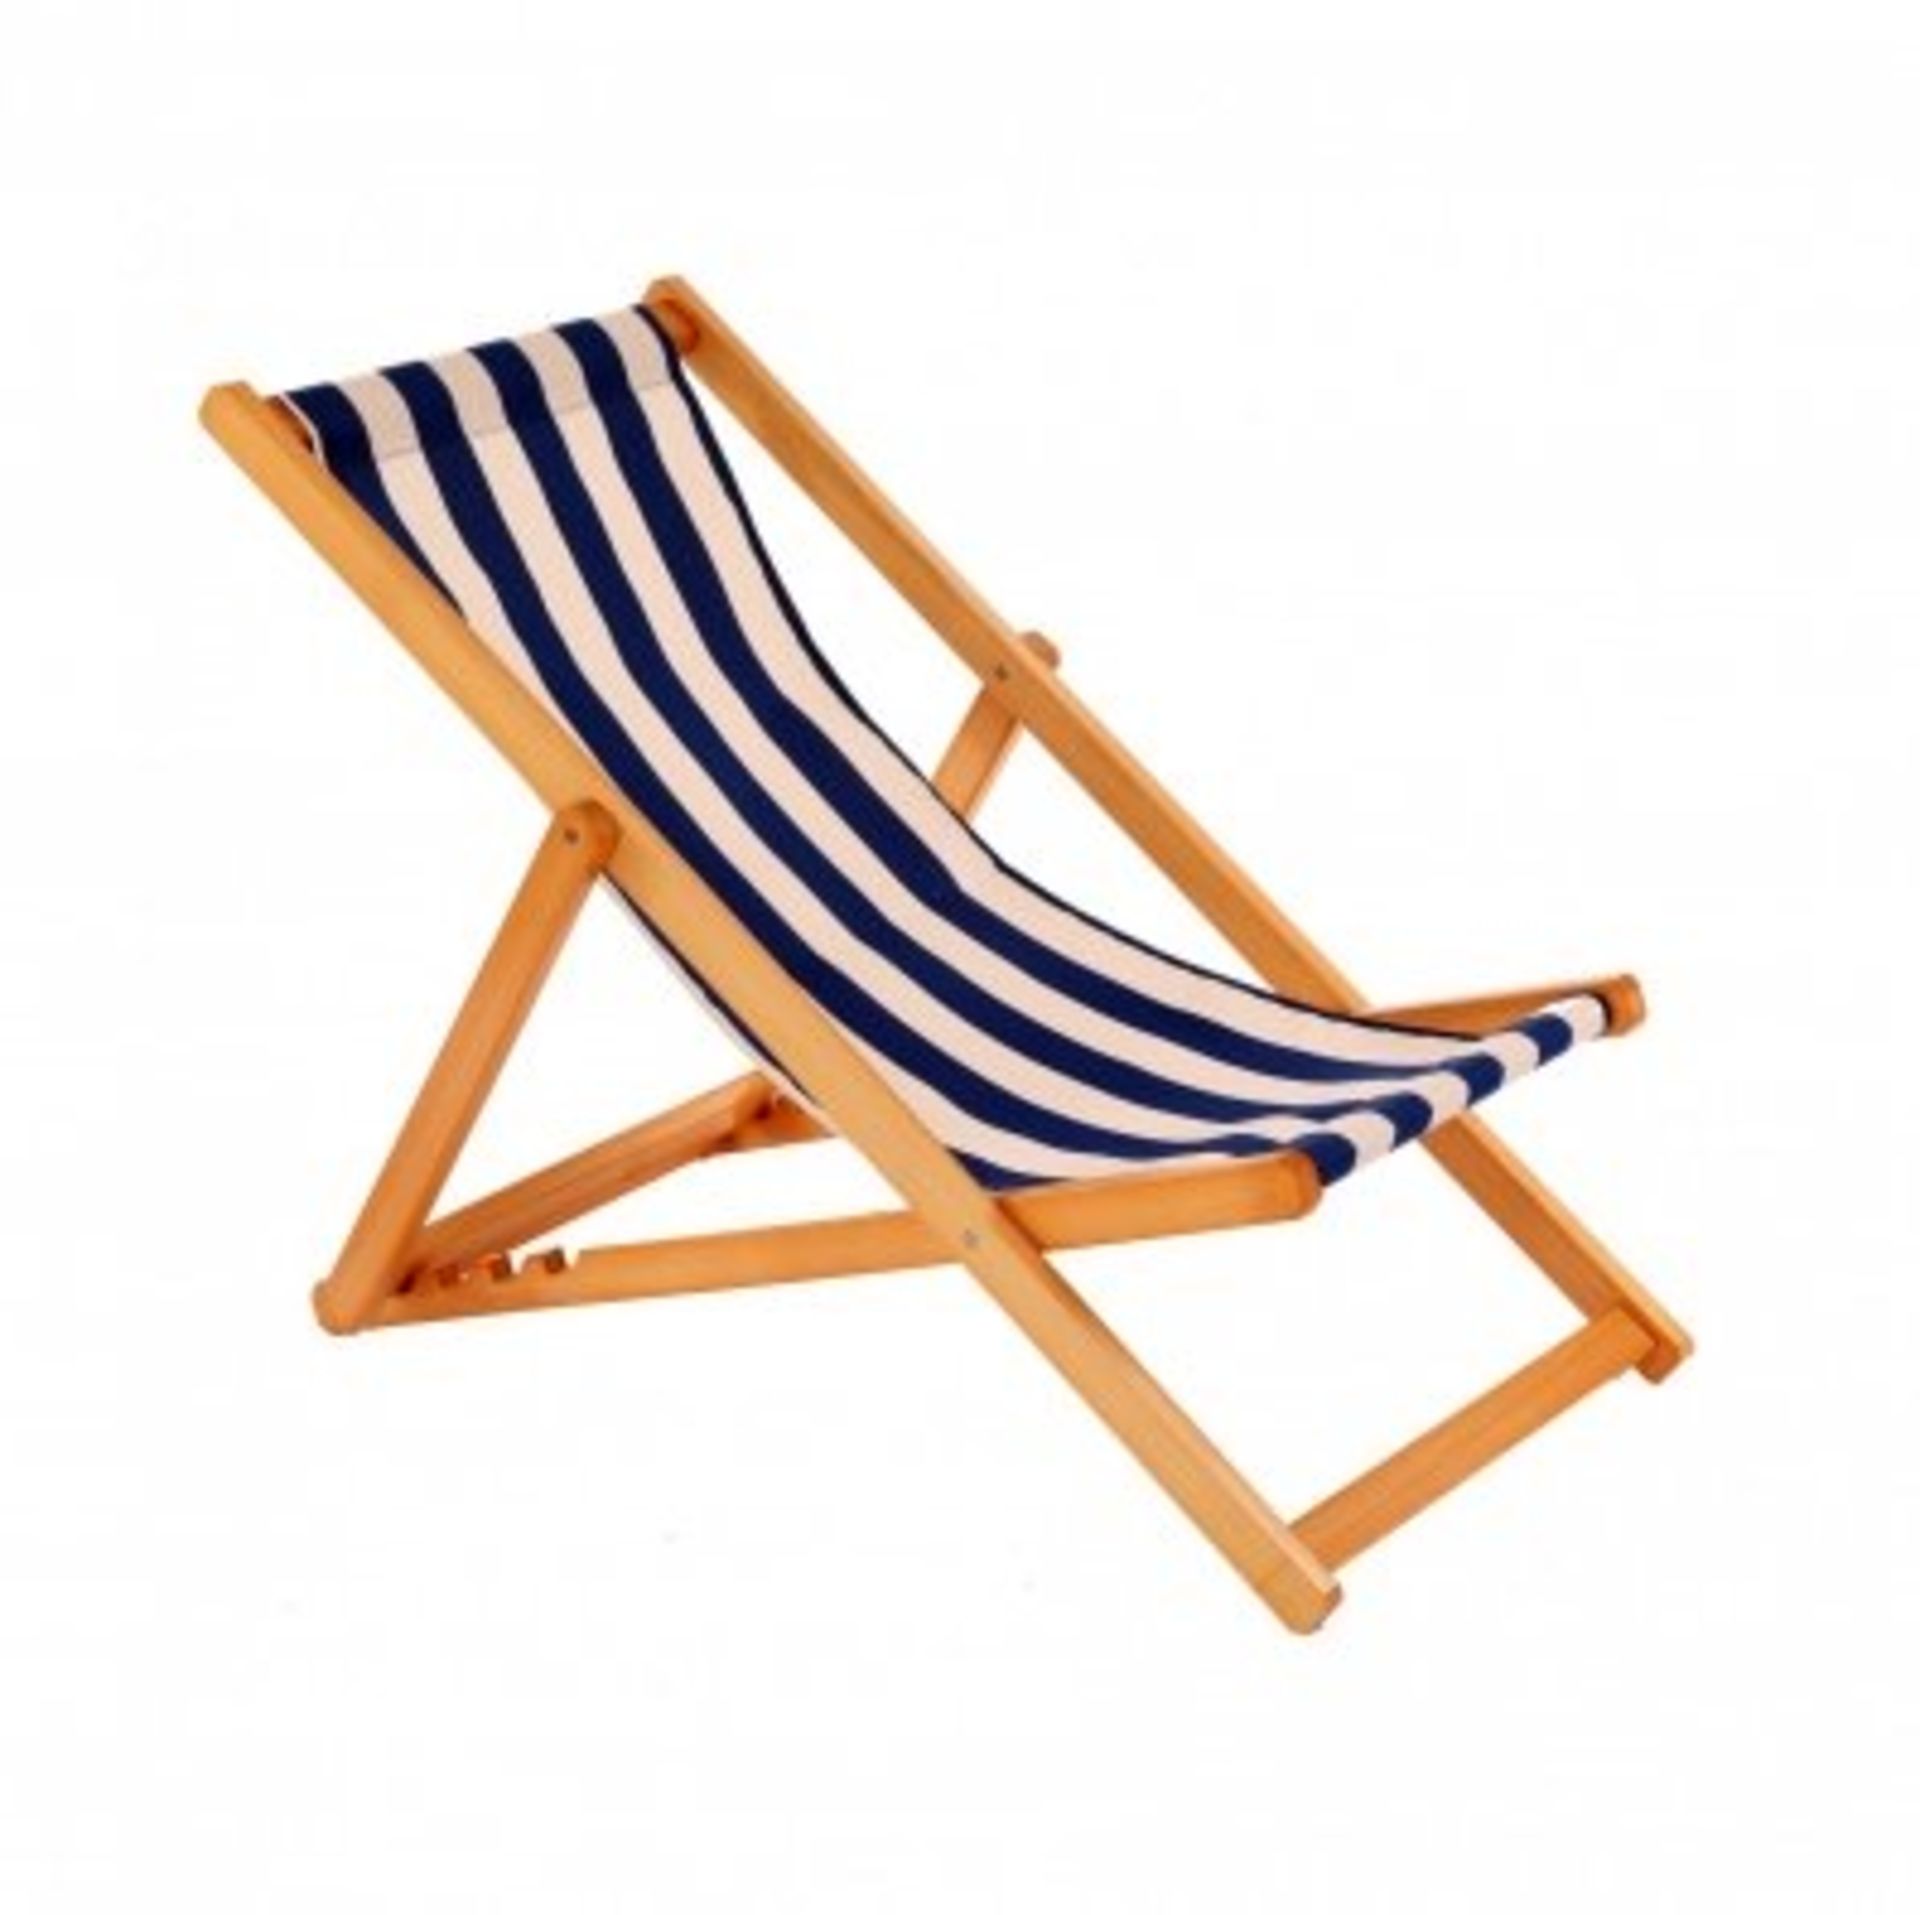 (LF209) Folding Hardwood Garden or Beach Deck Chair Deckchair Relax this summer wit...